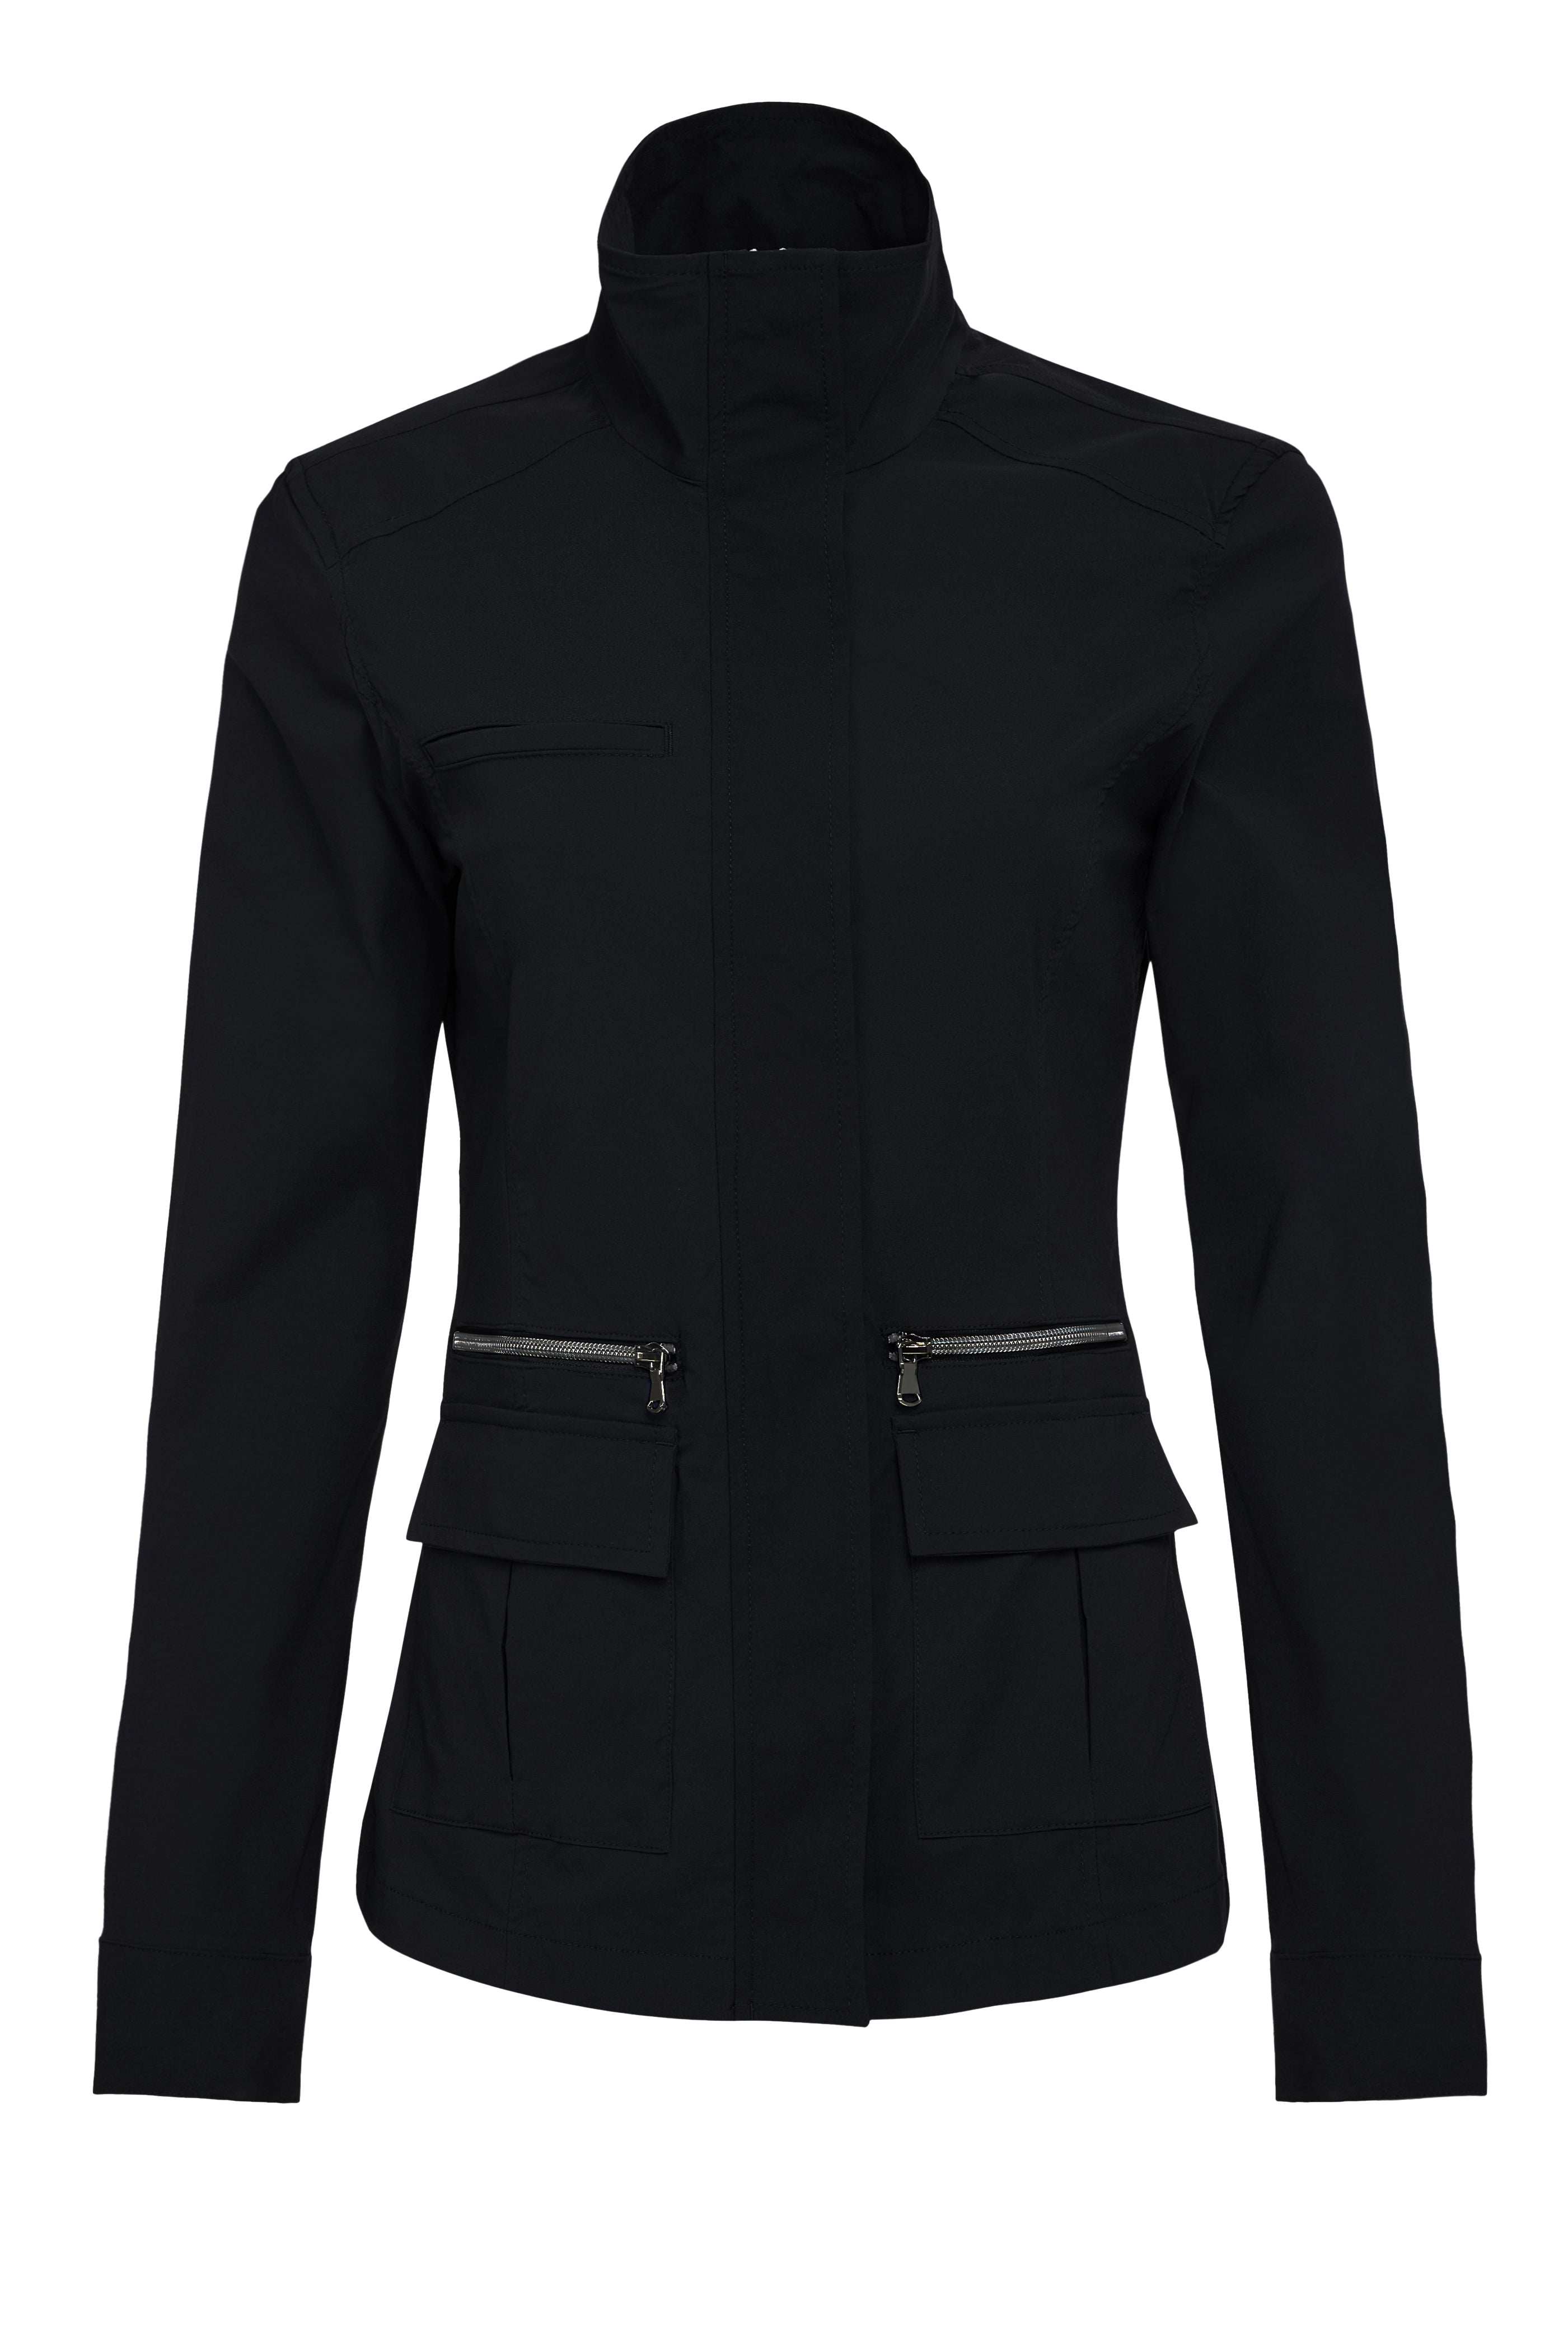 Women's Jackets & Vests | Columbia Sportswear